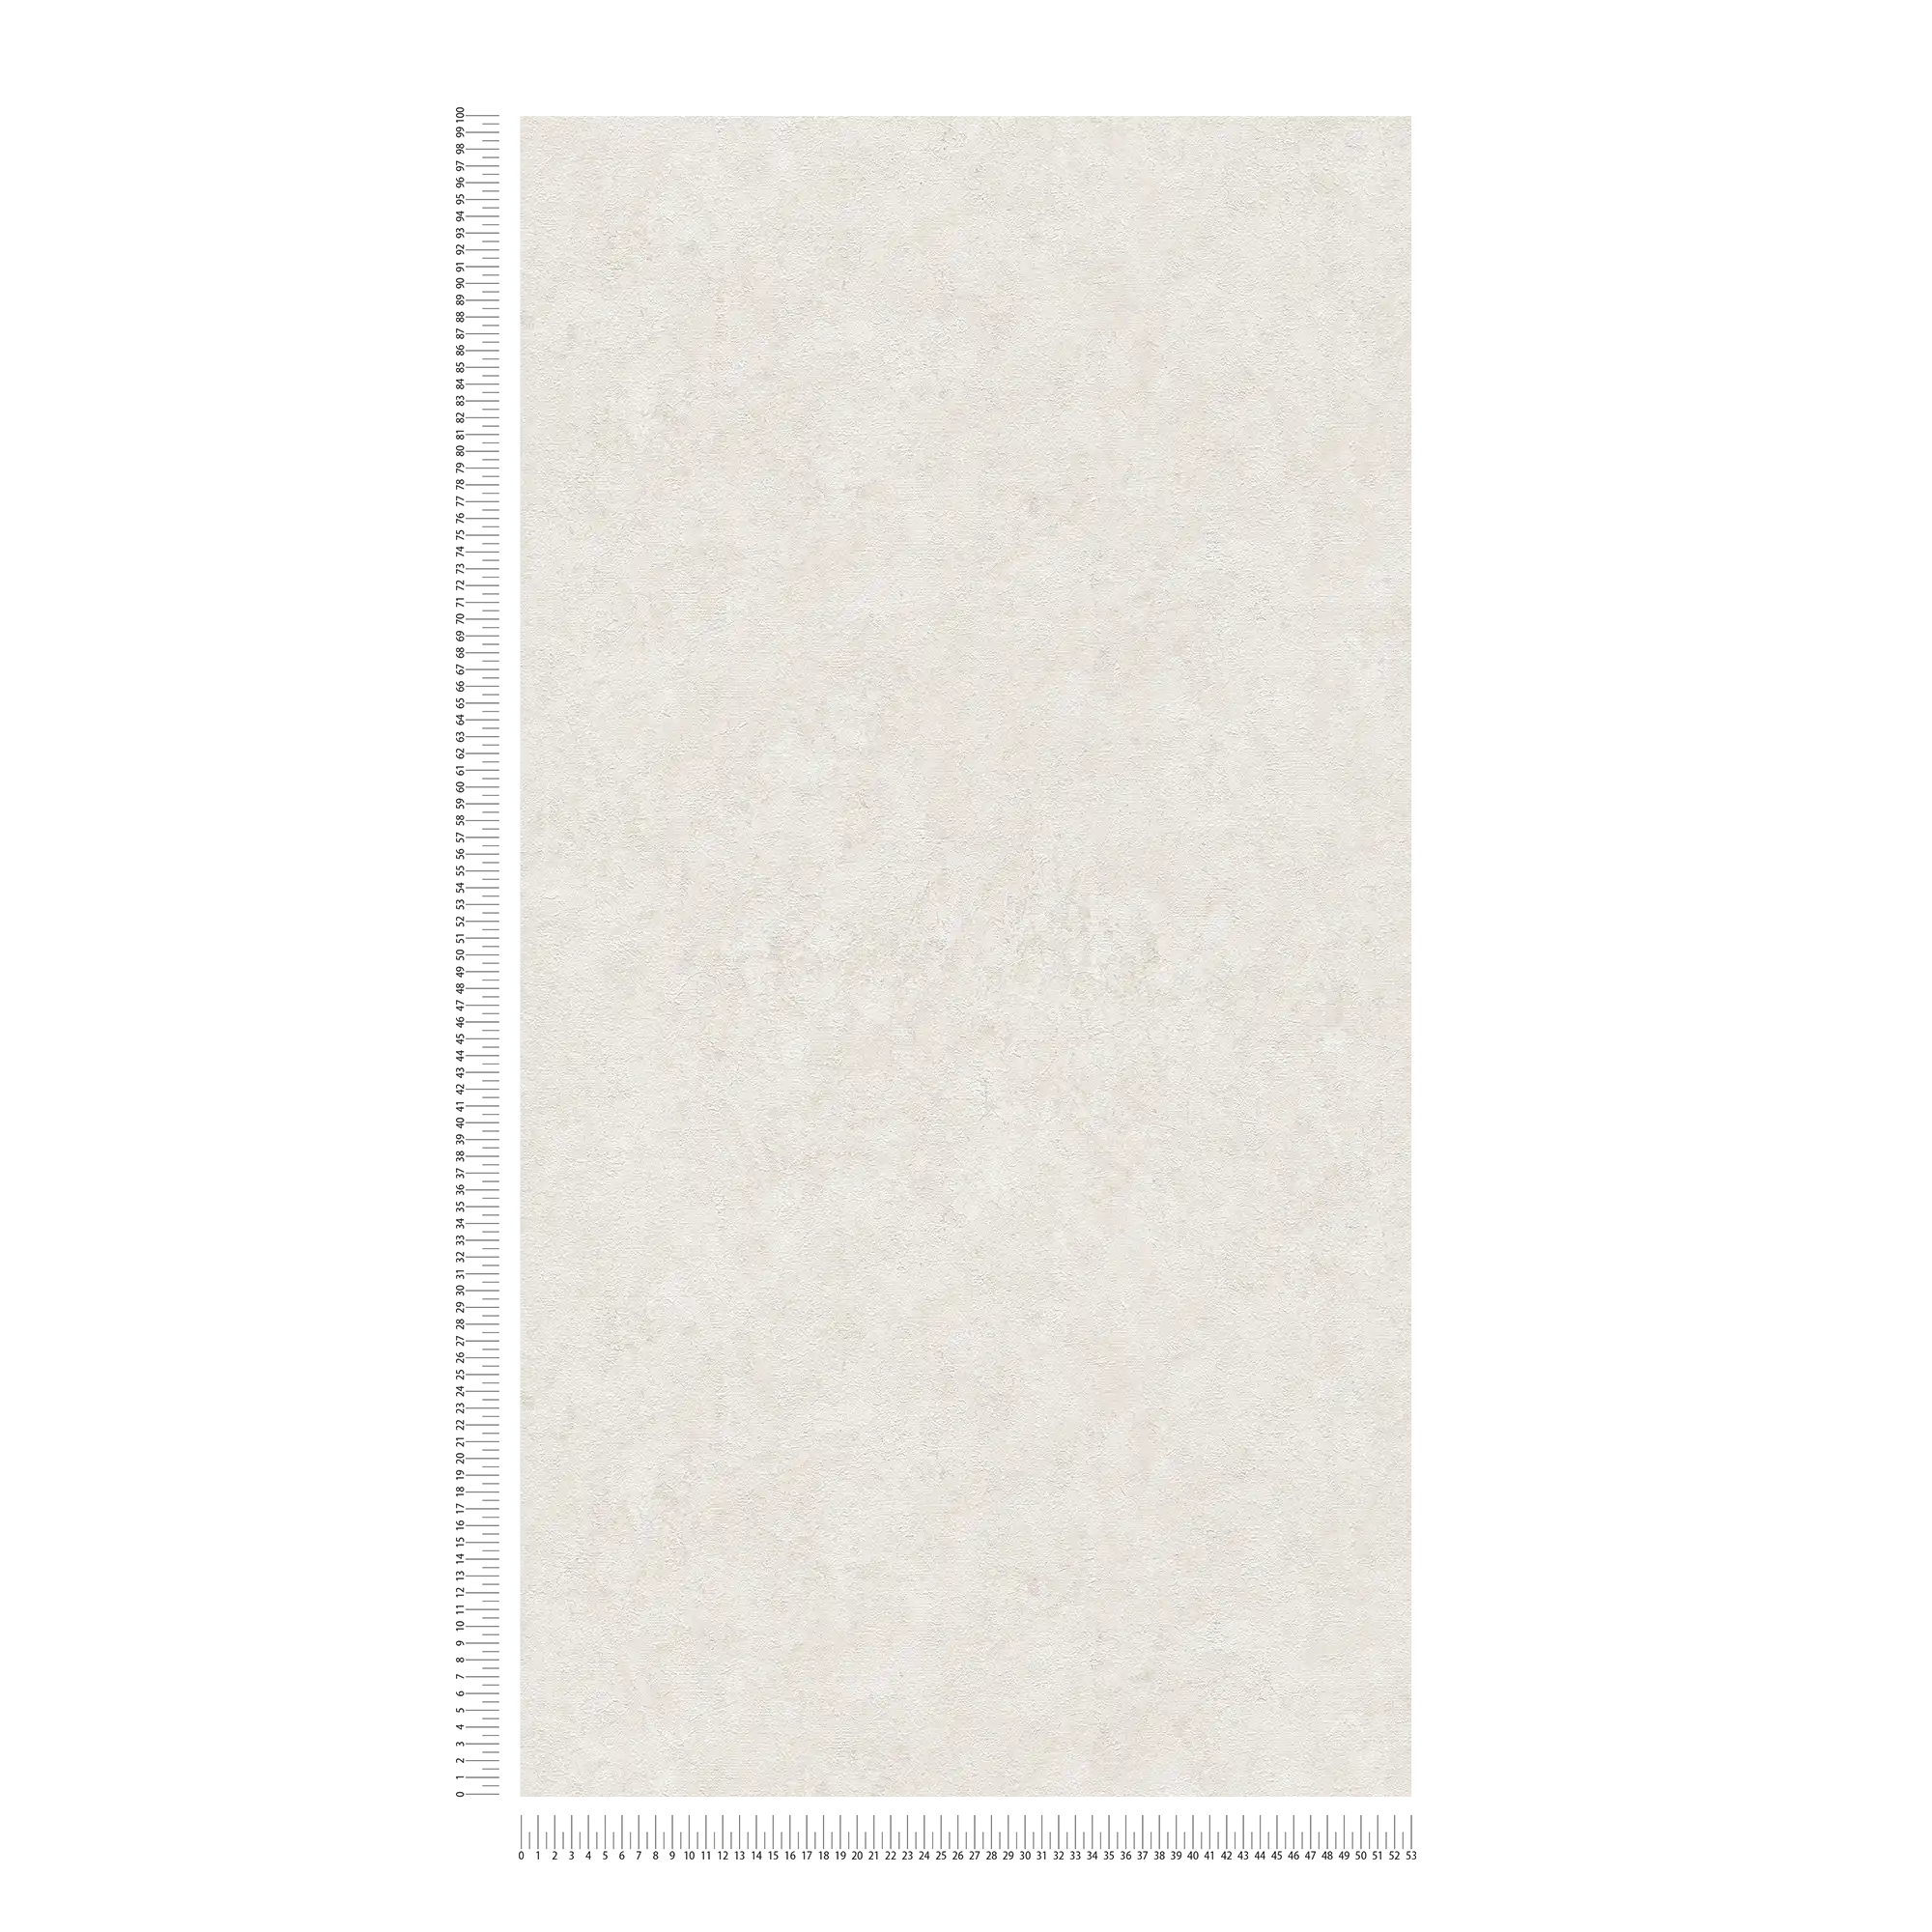             Papier peint intissé uni à motifs structurés - blanc, gris clair
        